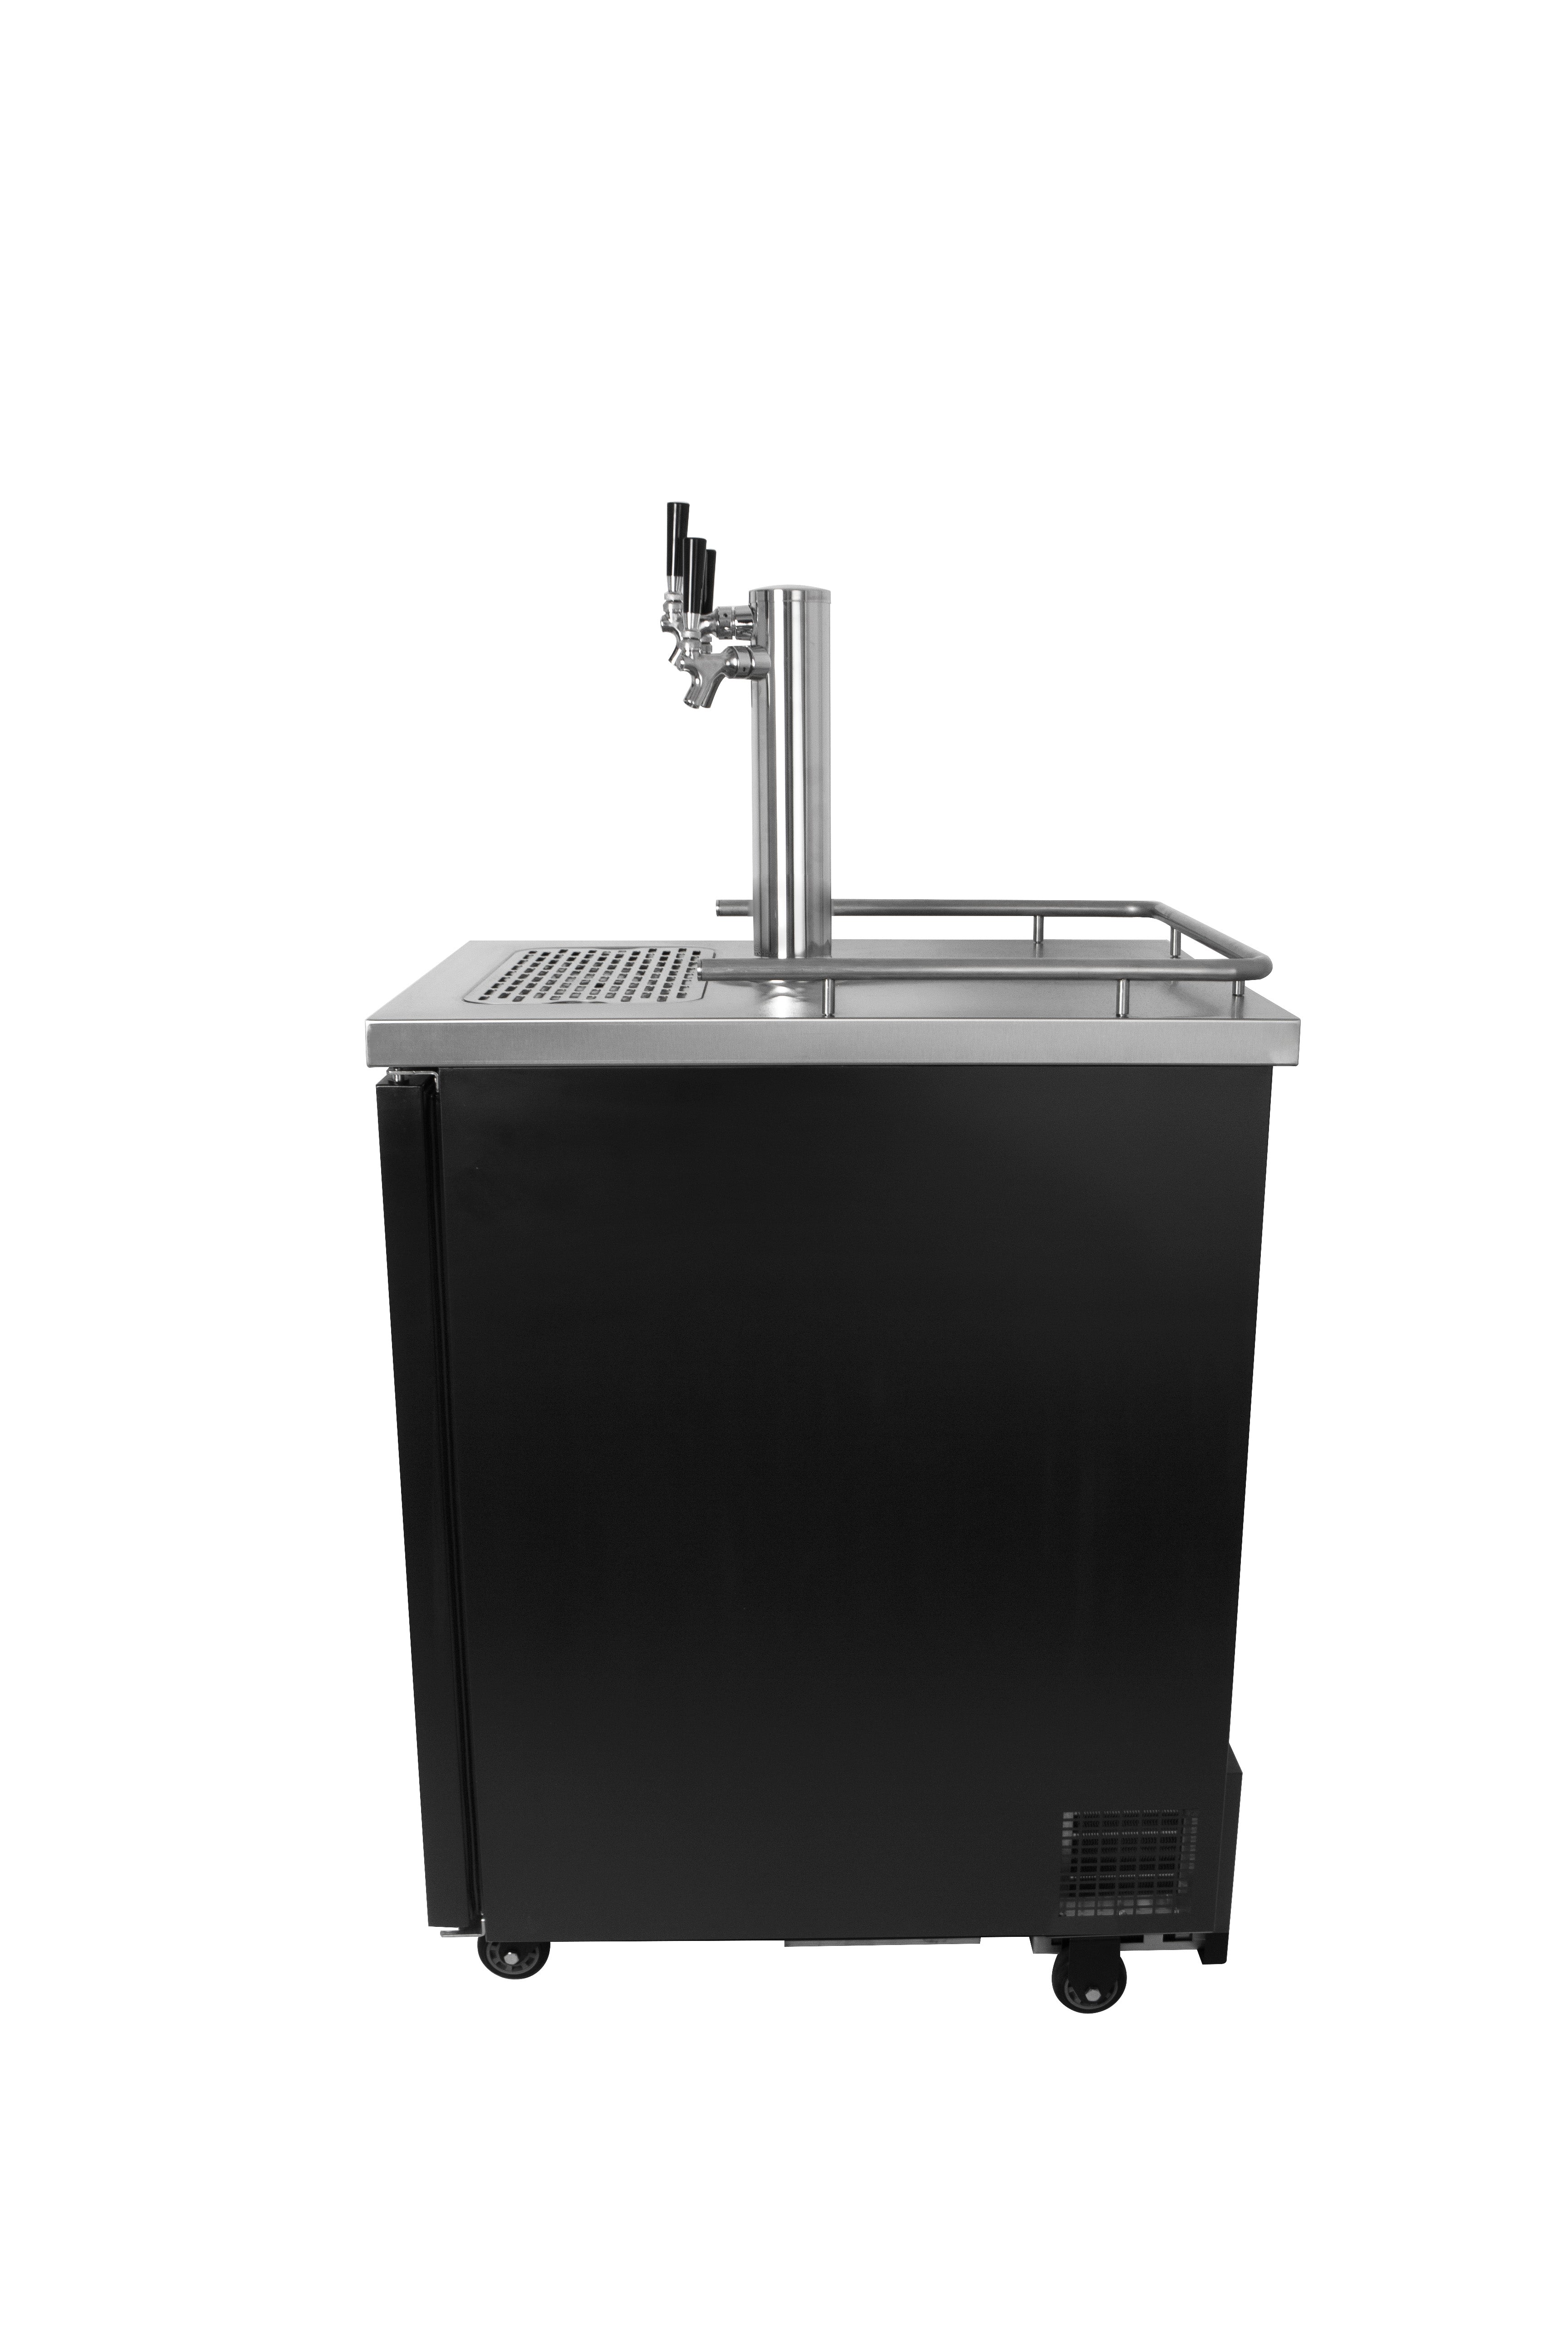 Kegco TCK-1B-3K Beer Dispenser | Restaurant Keg Cooler